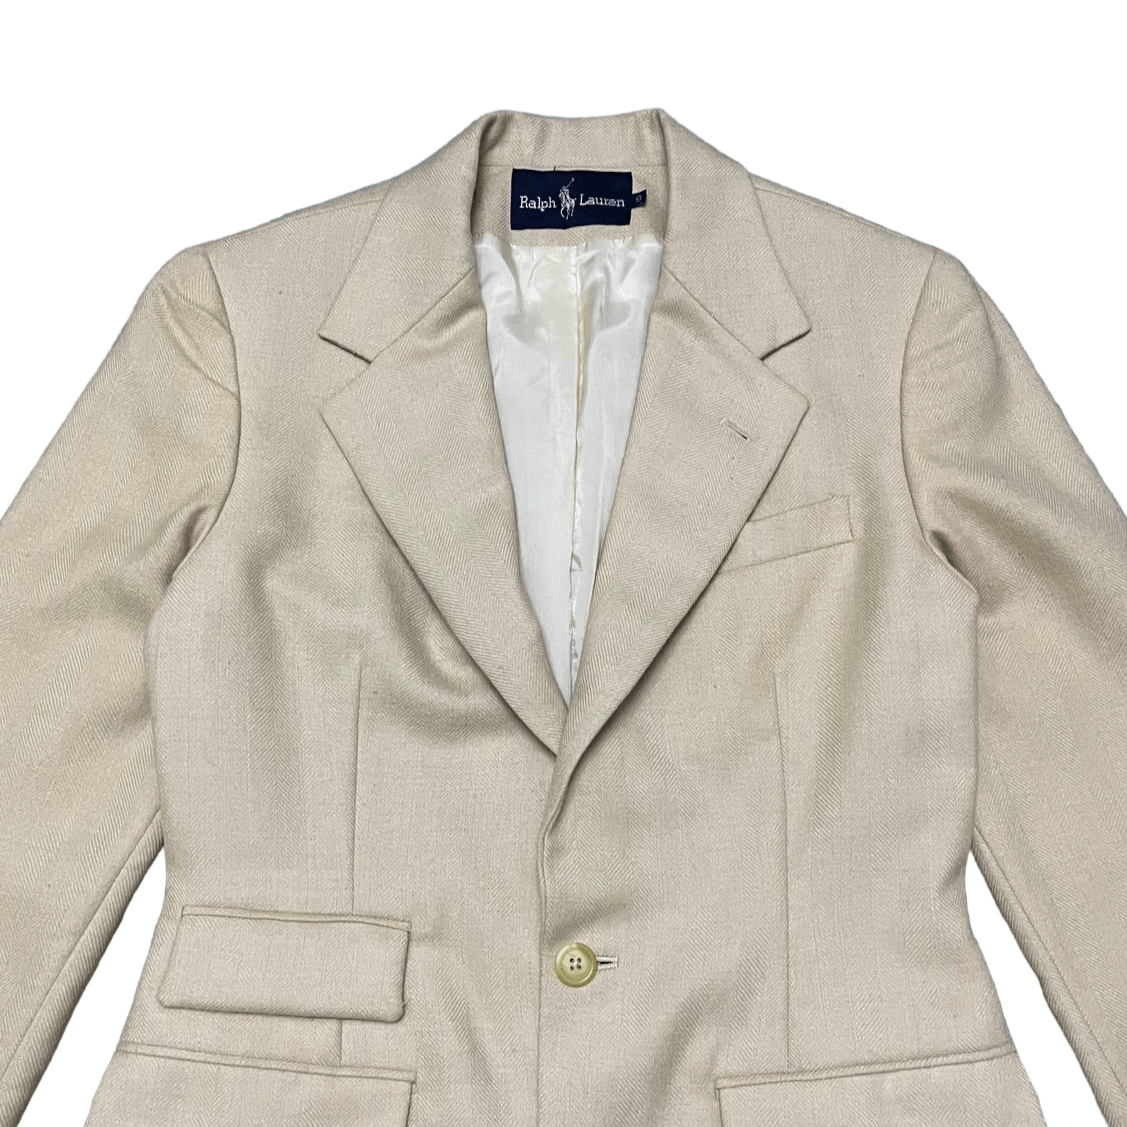 Vintage Ralph Lauren Wool Coat Blazer - 2